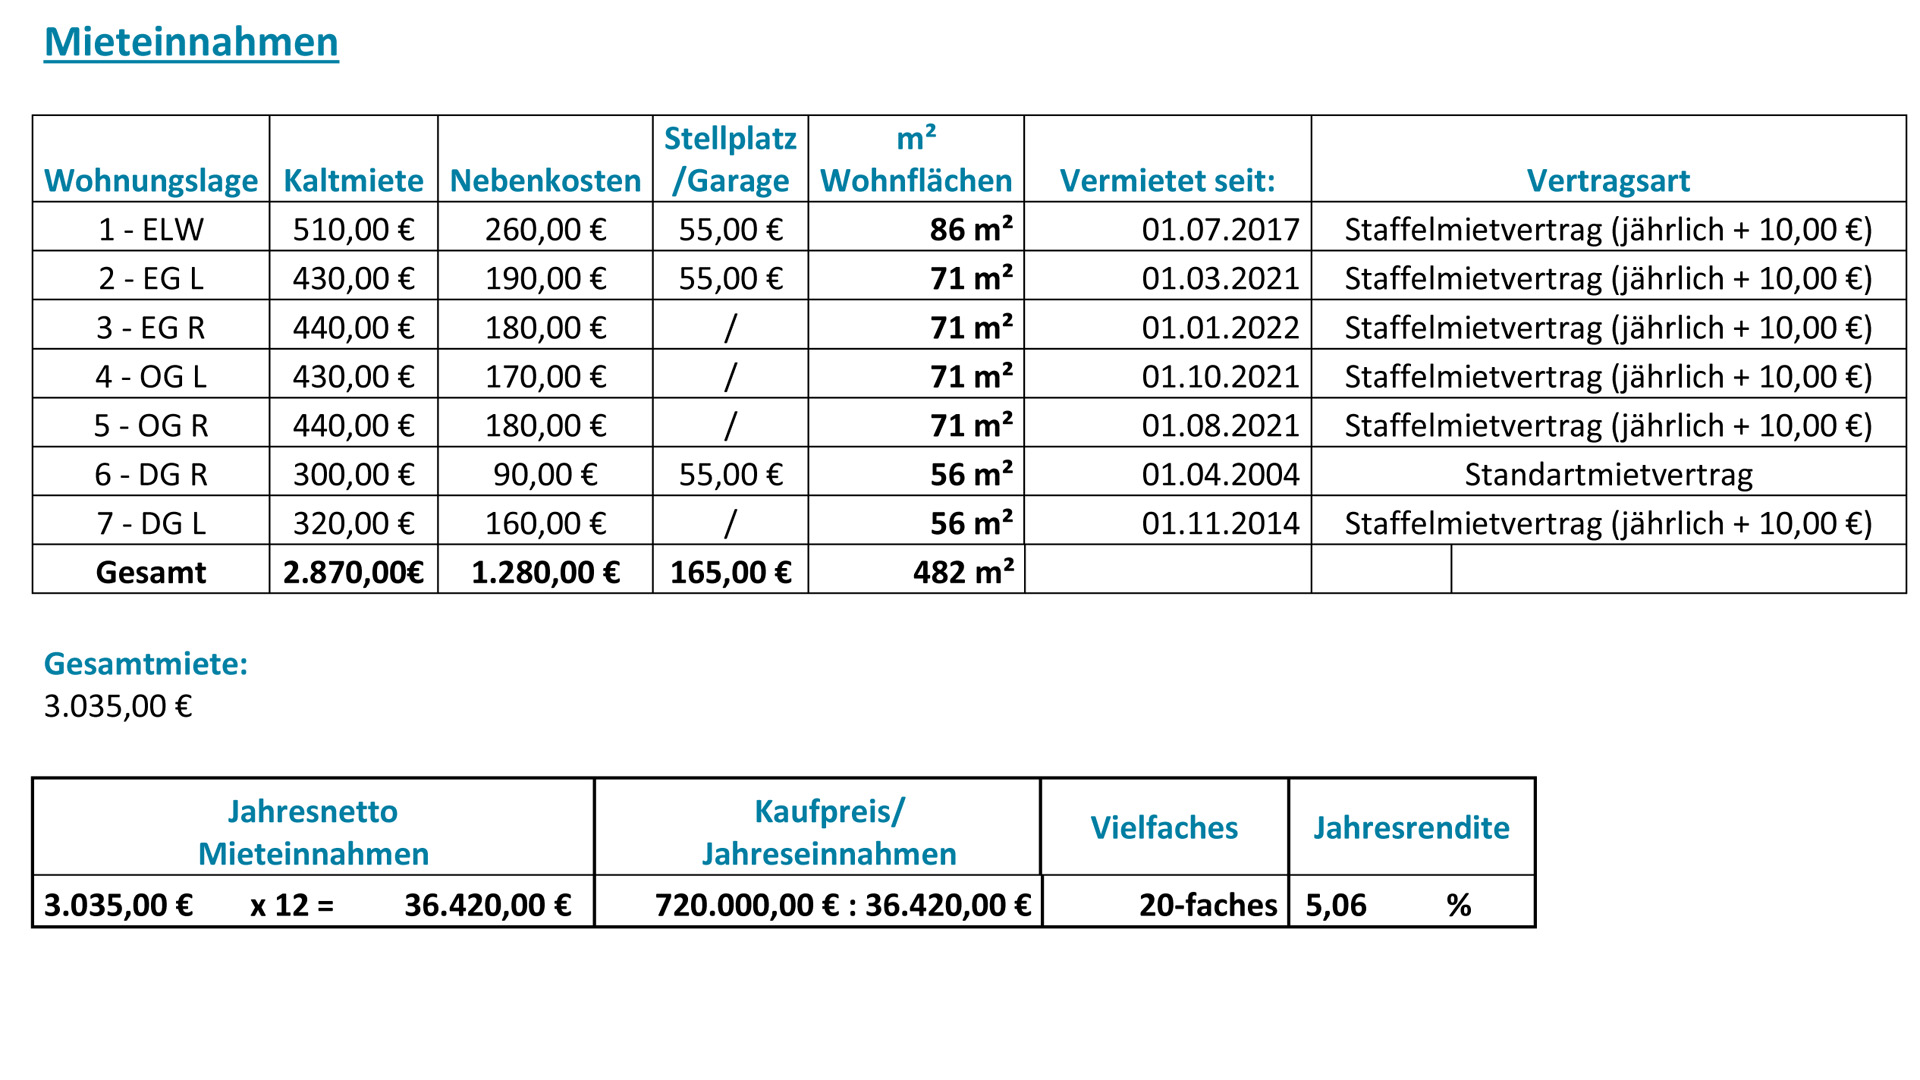 Alsdorf: Gepflegtes 7-FH - 36.420,00 € Mieteinnahmen/Jahr, Renditeberechnung